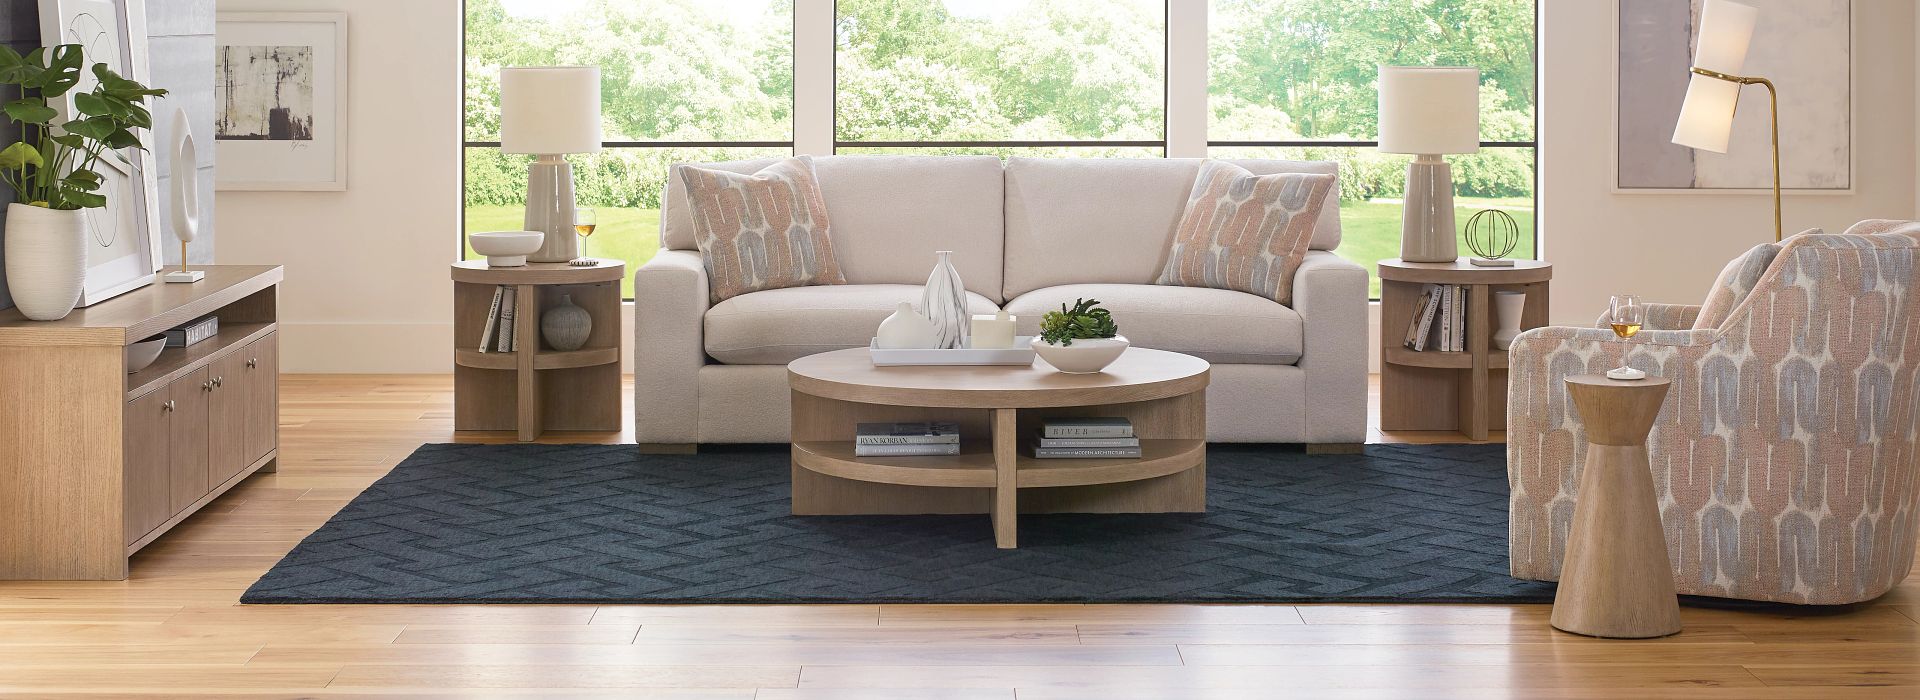 Modern living room tables